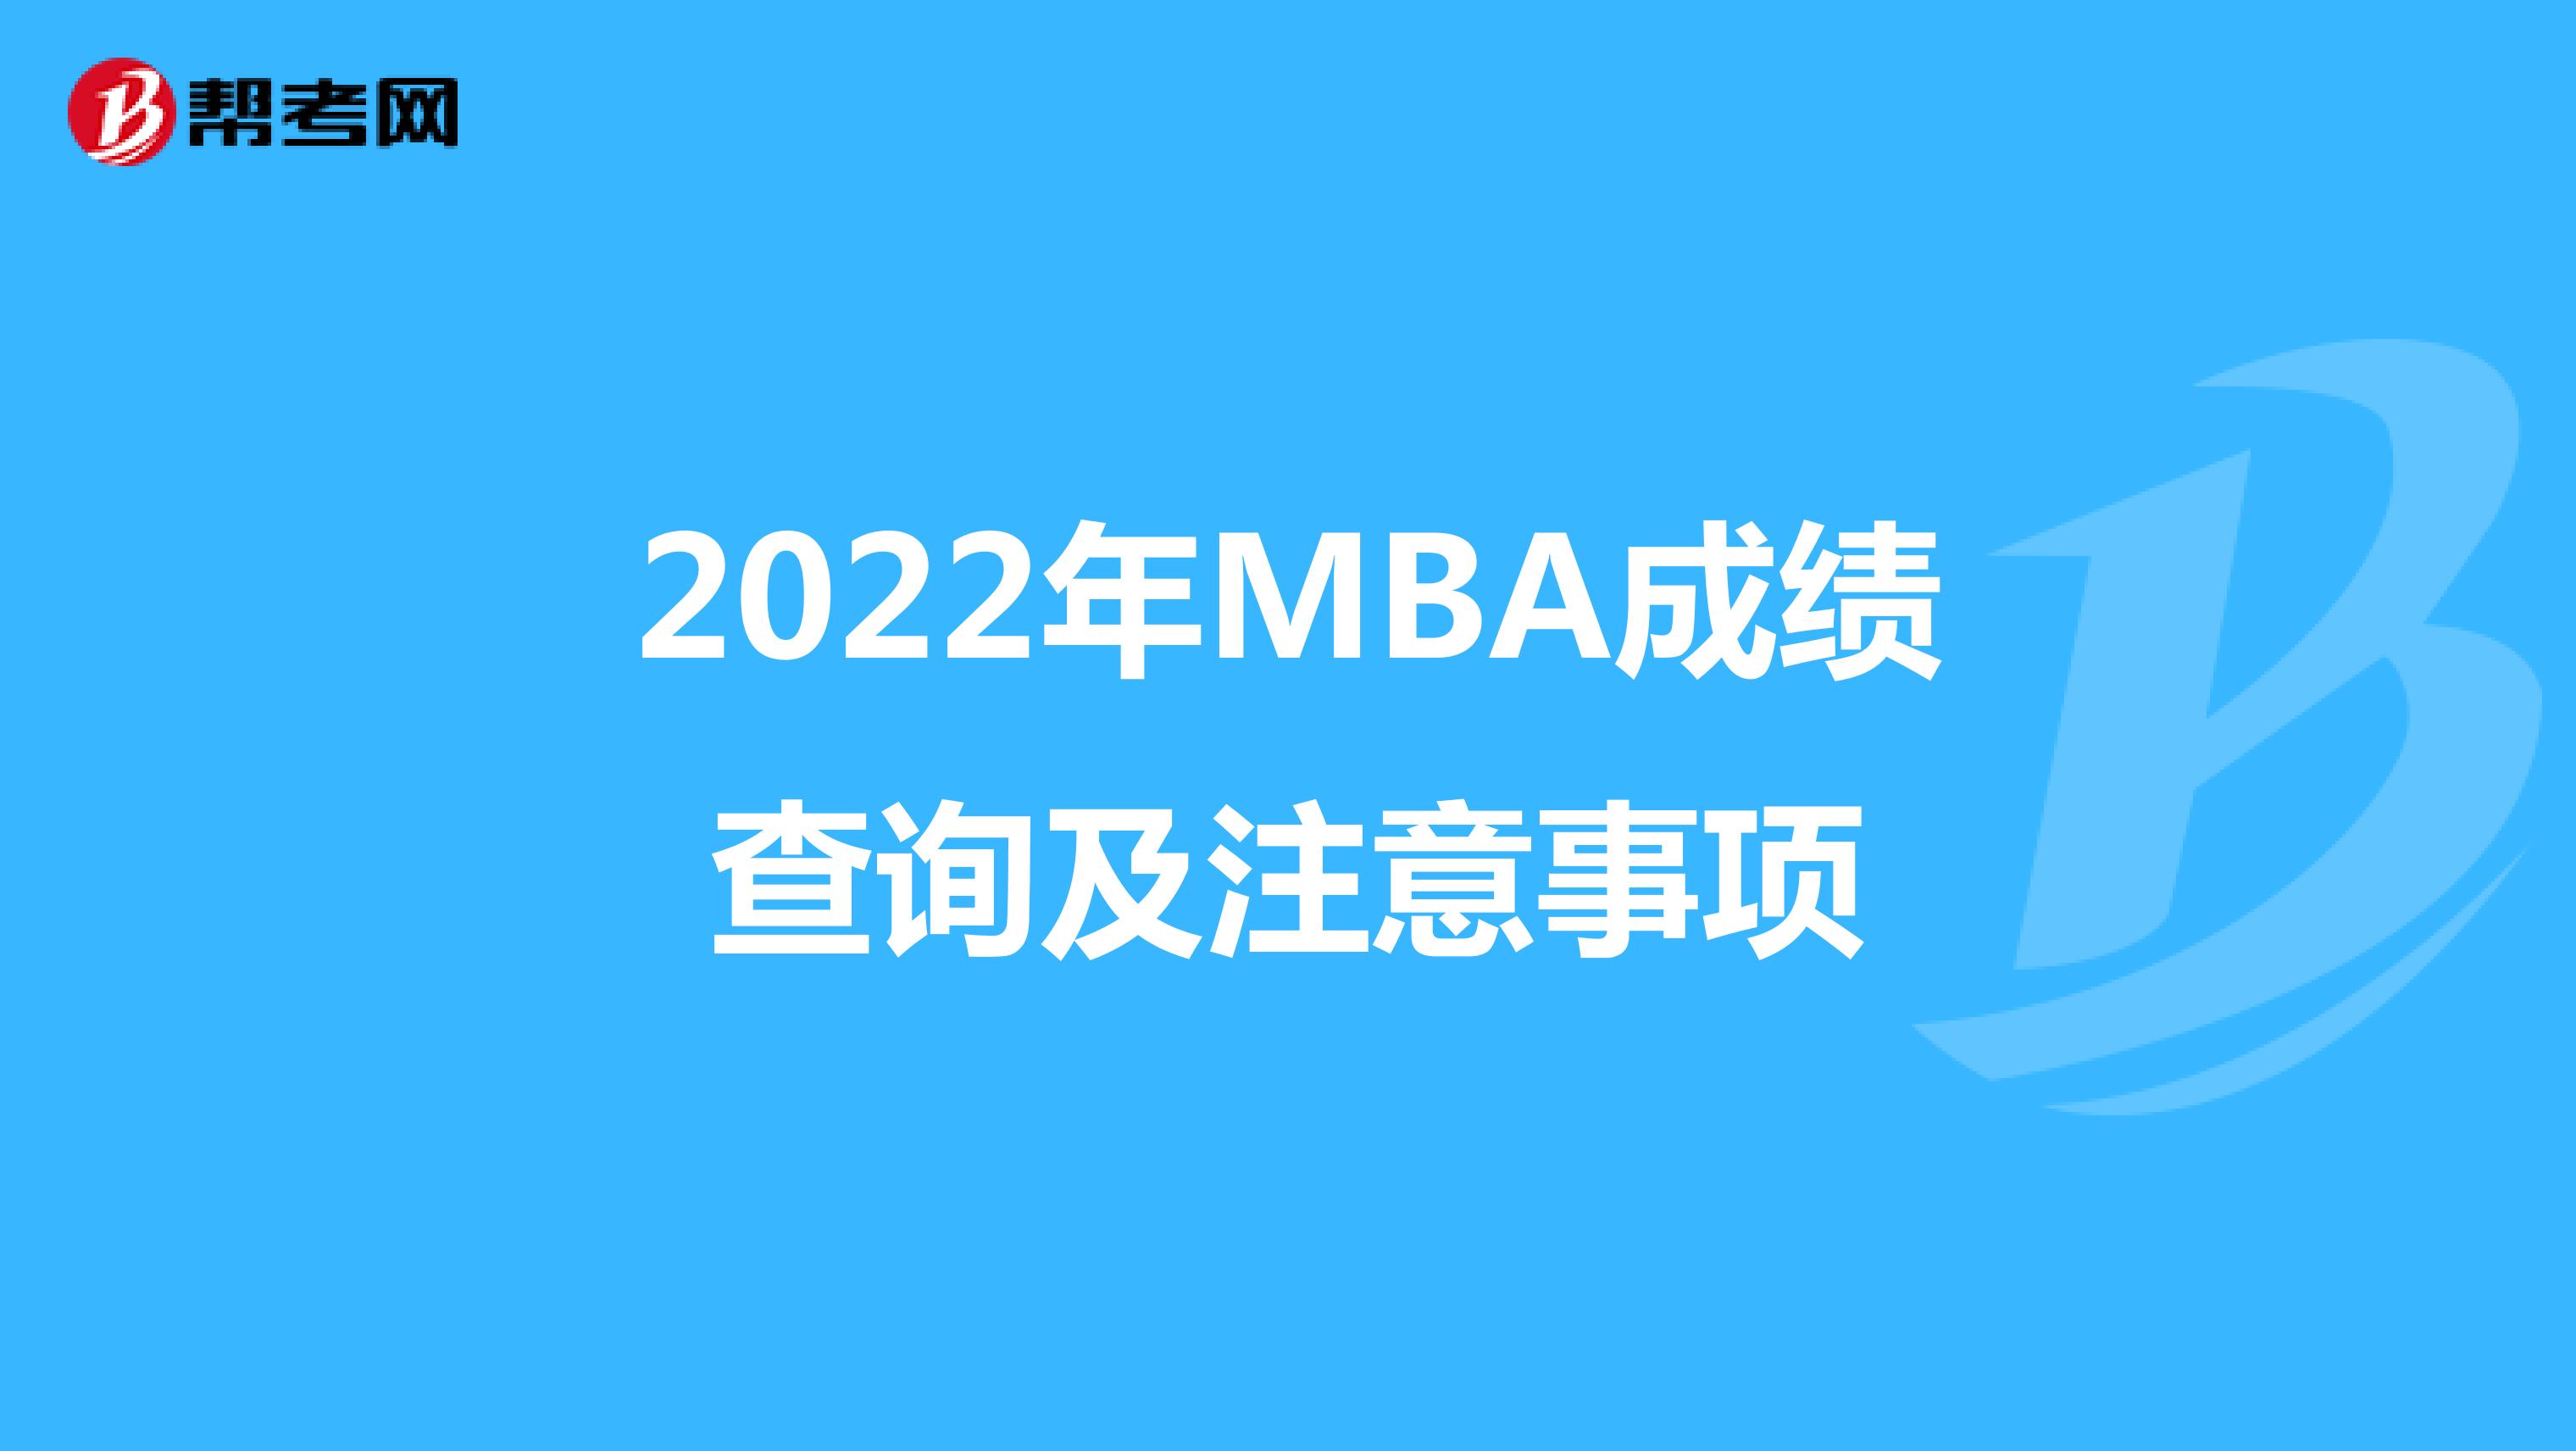 2022年MBA成績查詢及注意事項